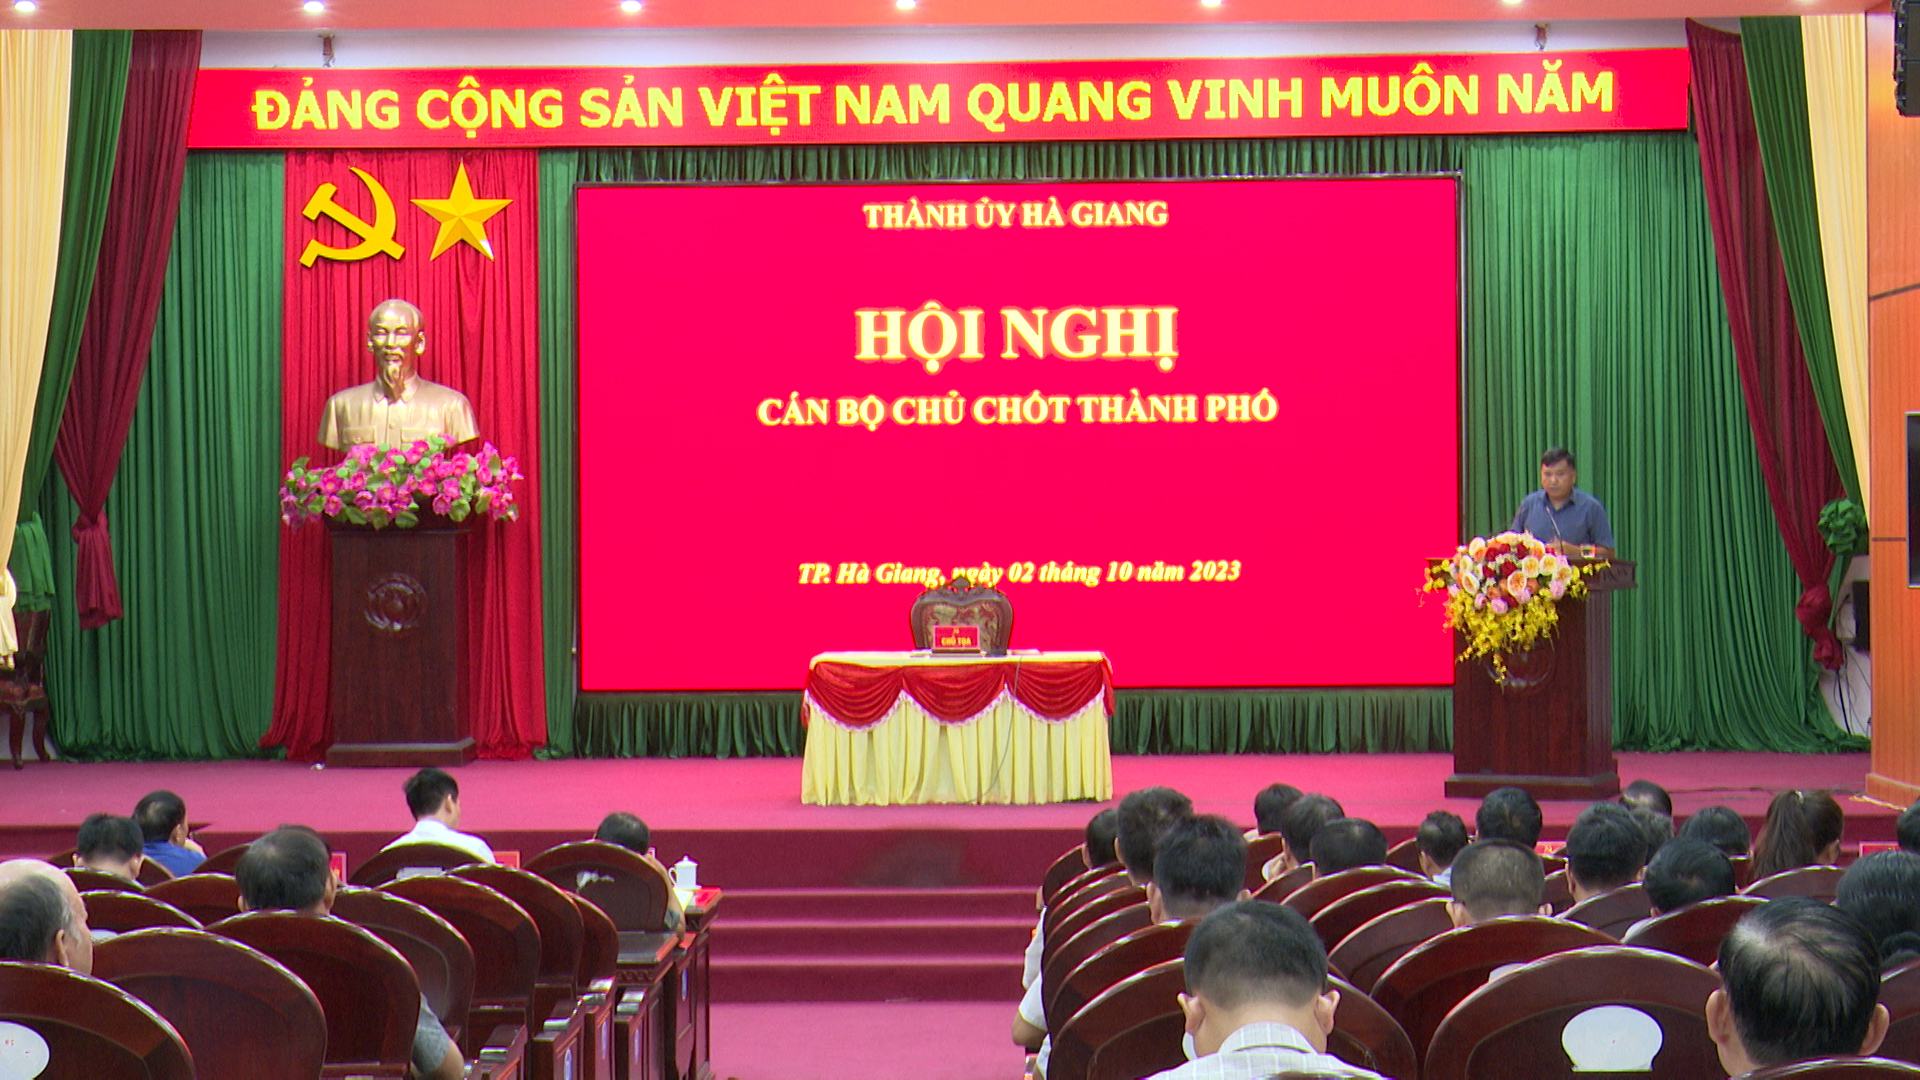 Thành phố Hà Giang giới thiệu nhân sự bổ sung chức danh Phó Chủ tịch UBND thành phố